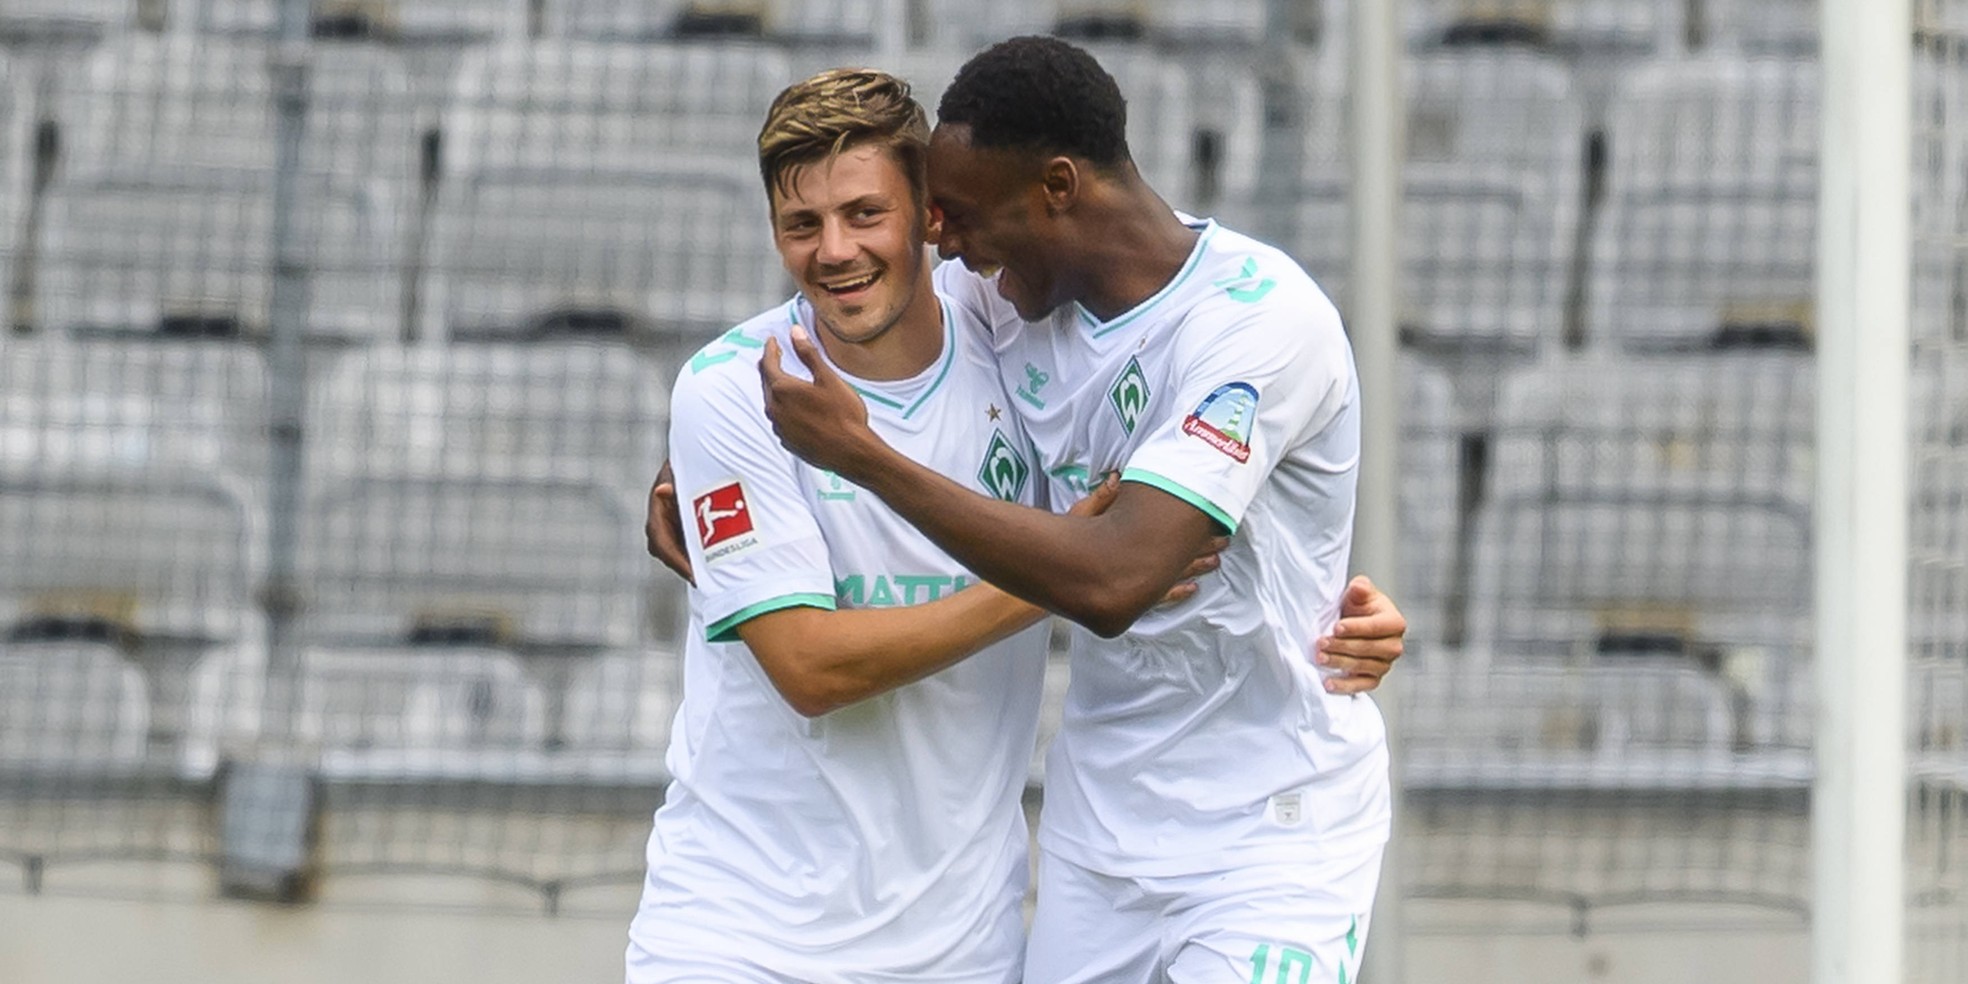 Dawid Kownacki trifft für den SV Werder Bremen